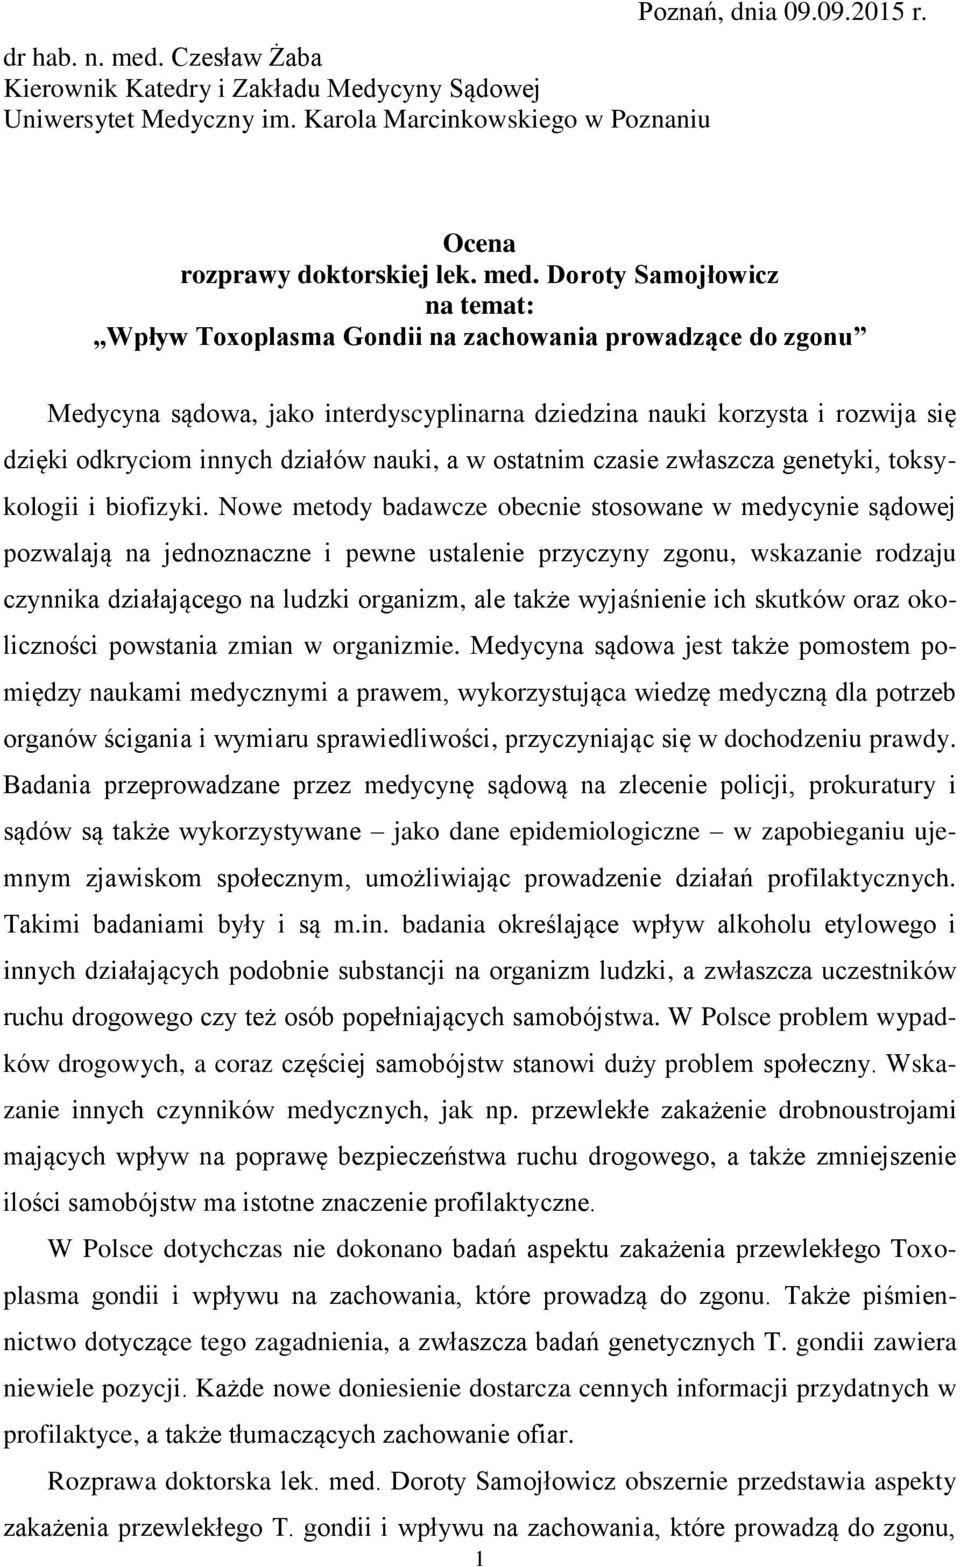 Doroty Samojłowicz na temat: Wpływ Toxoplasma Gondii na zachowania prowadzące do zgonu Medycyna sądowa, jako interdyscyplinarna dziedzina nauki korzysta i rozwija się dzięki odkryciom innych działów